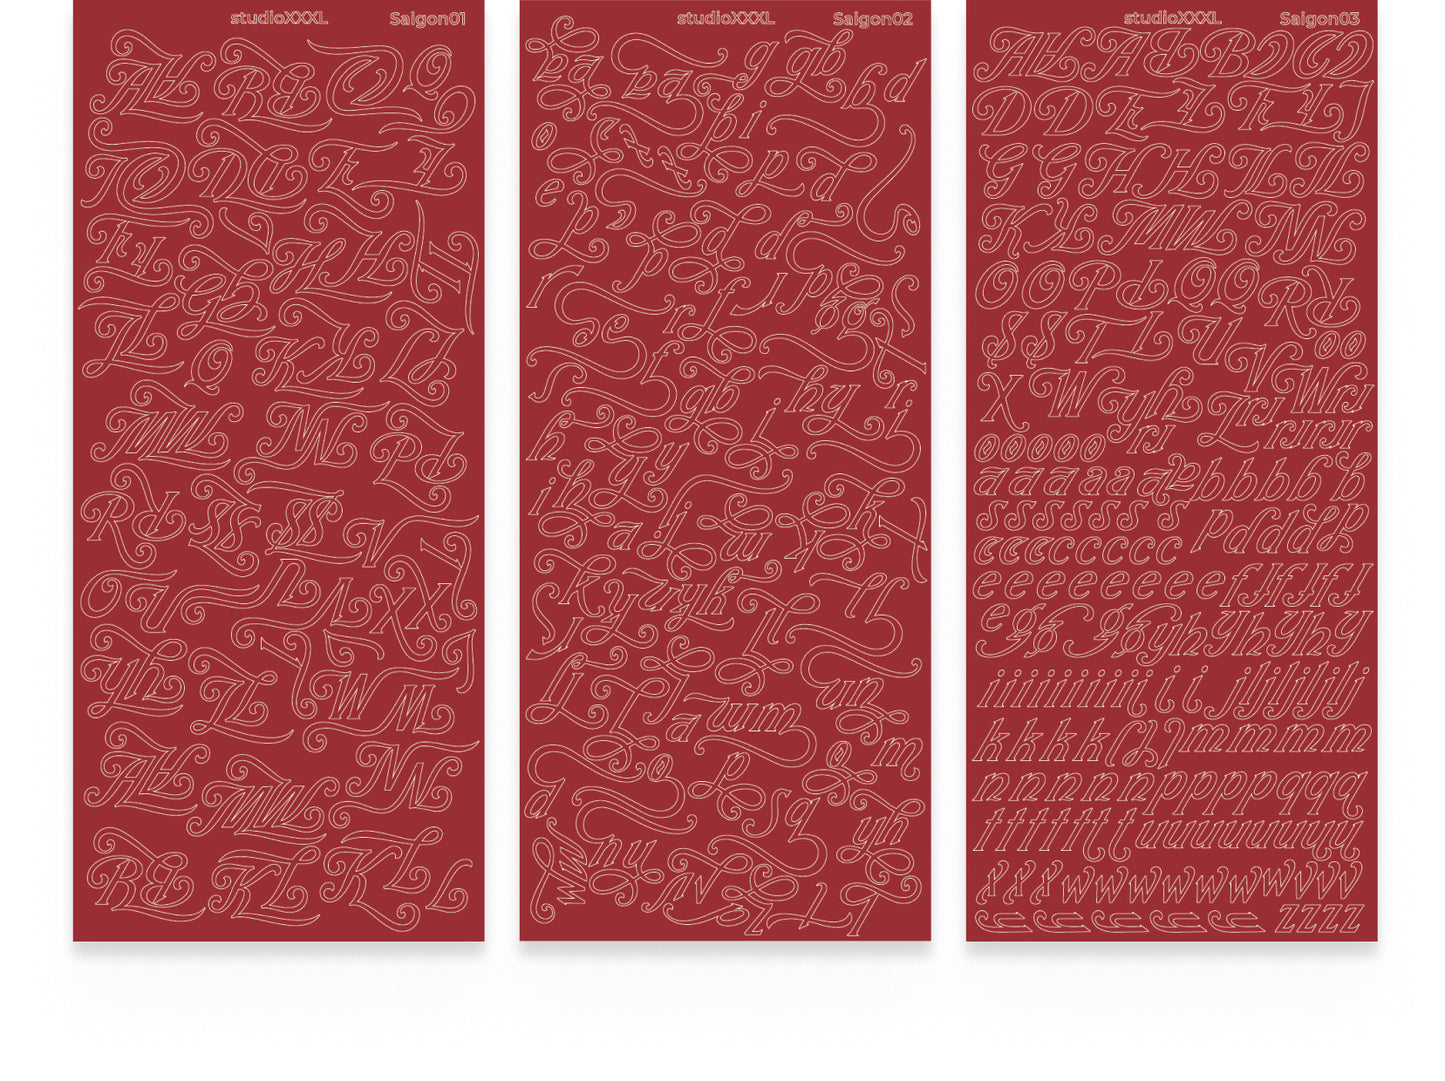 [StudioXXXL] Letter Sticker Saigon (7 colors, 3 sheets per set)